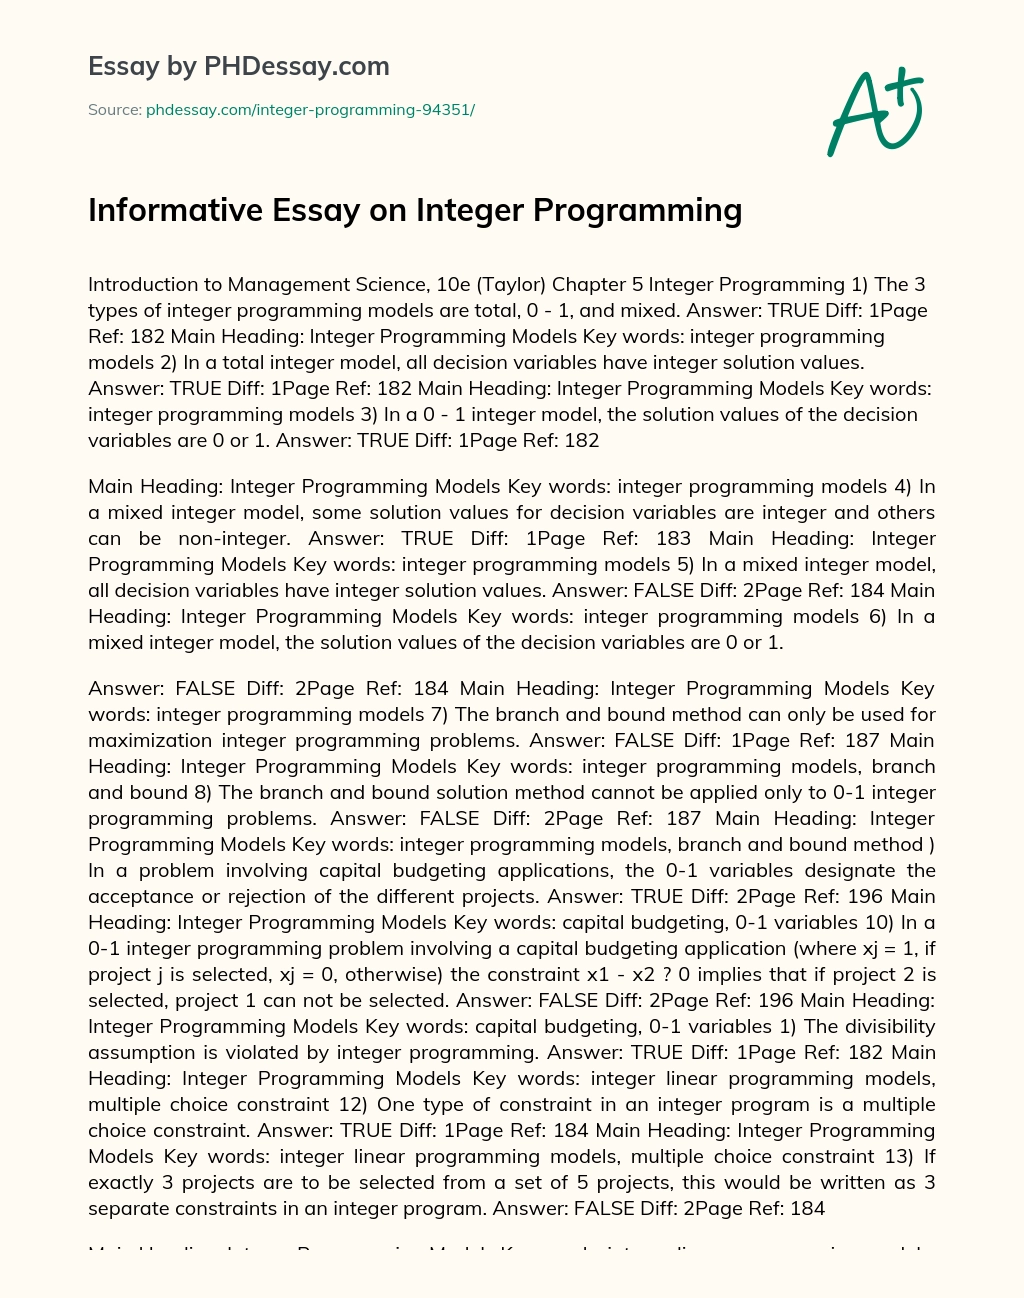 Informative Essay on Integer Programming essay